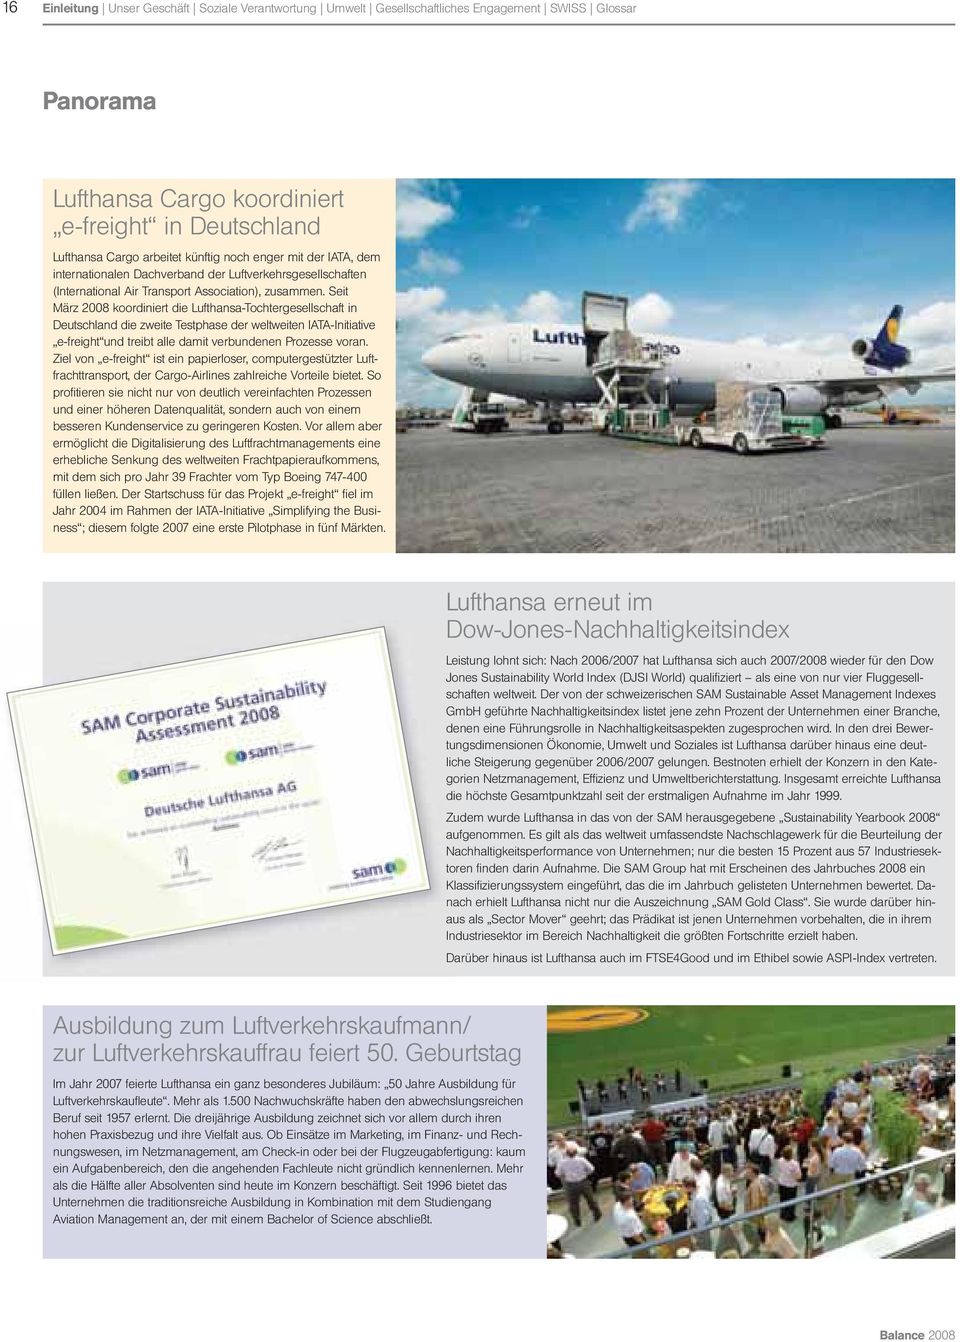 Seit März 2008 koordiniert die Lufthansa-Tochtergesellschaft in Deutschland die zweite Testphase der weltweiten IATA-Initia tive e-freight und treibt alle damit verbundenen Prozesse voran.